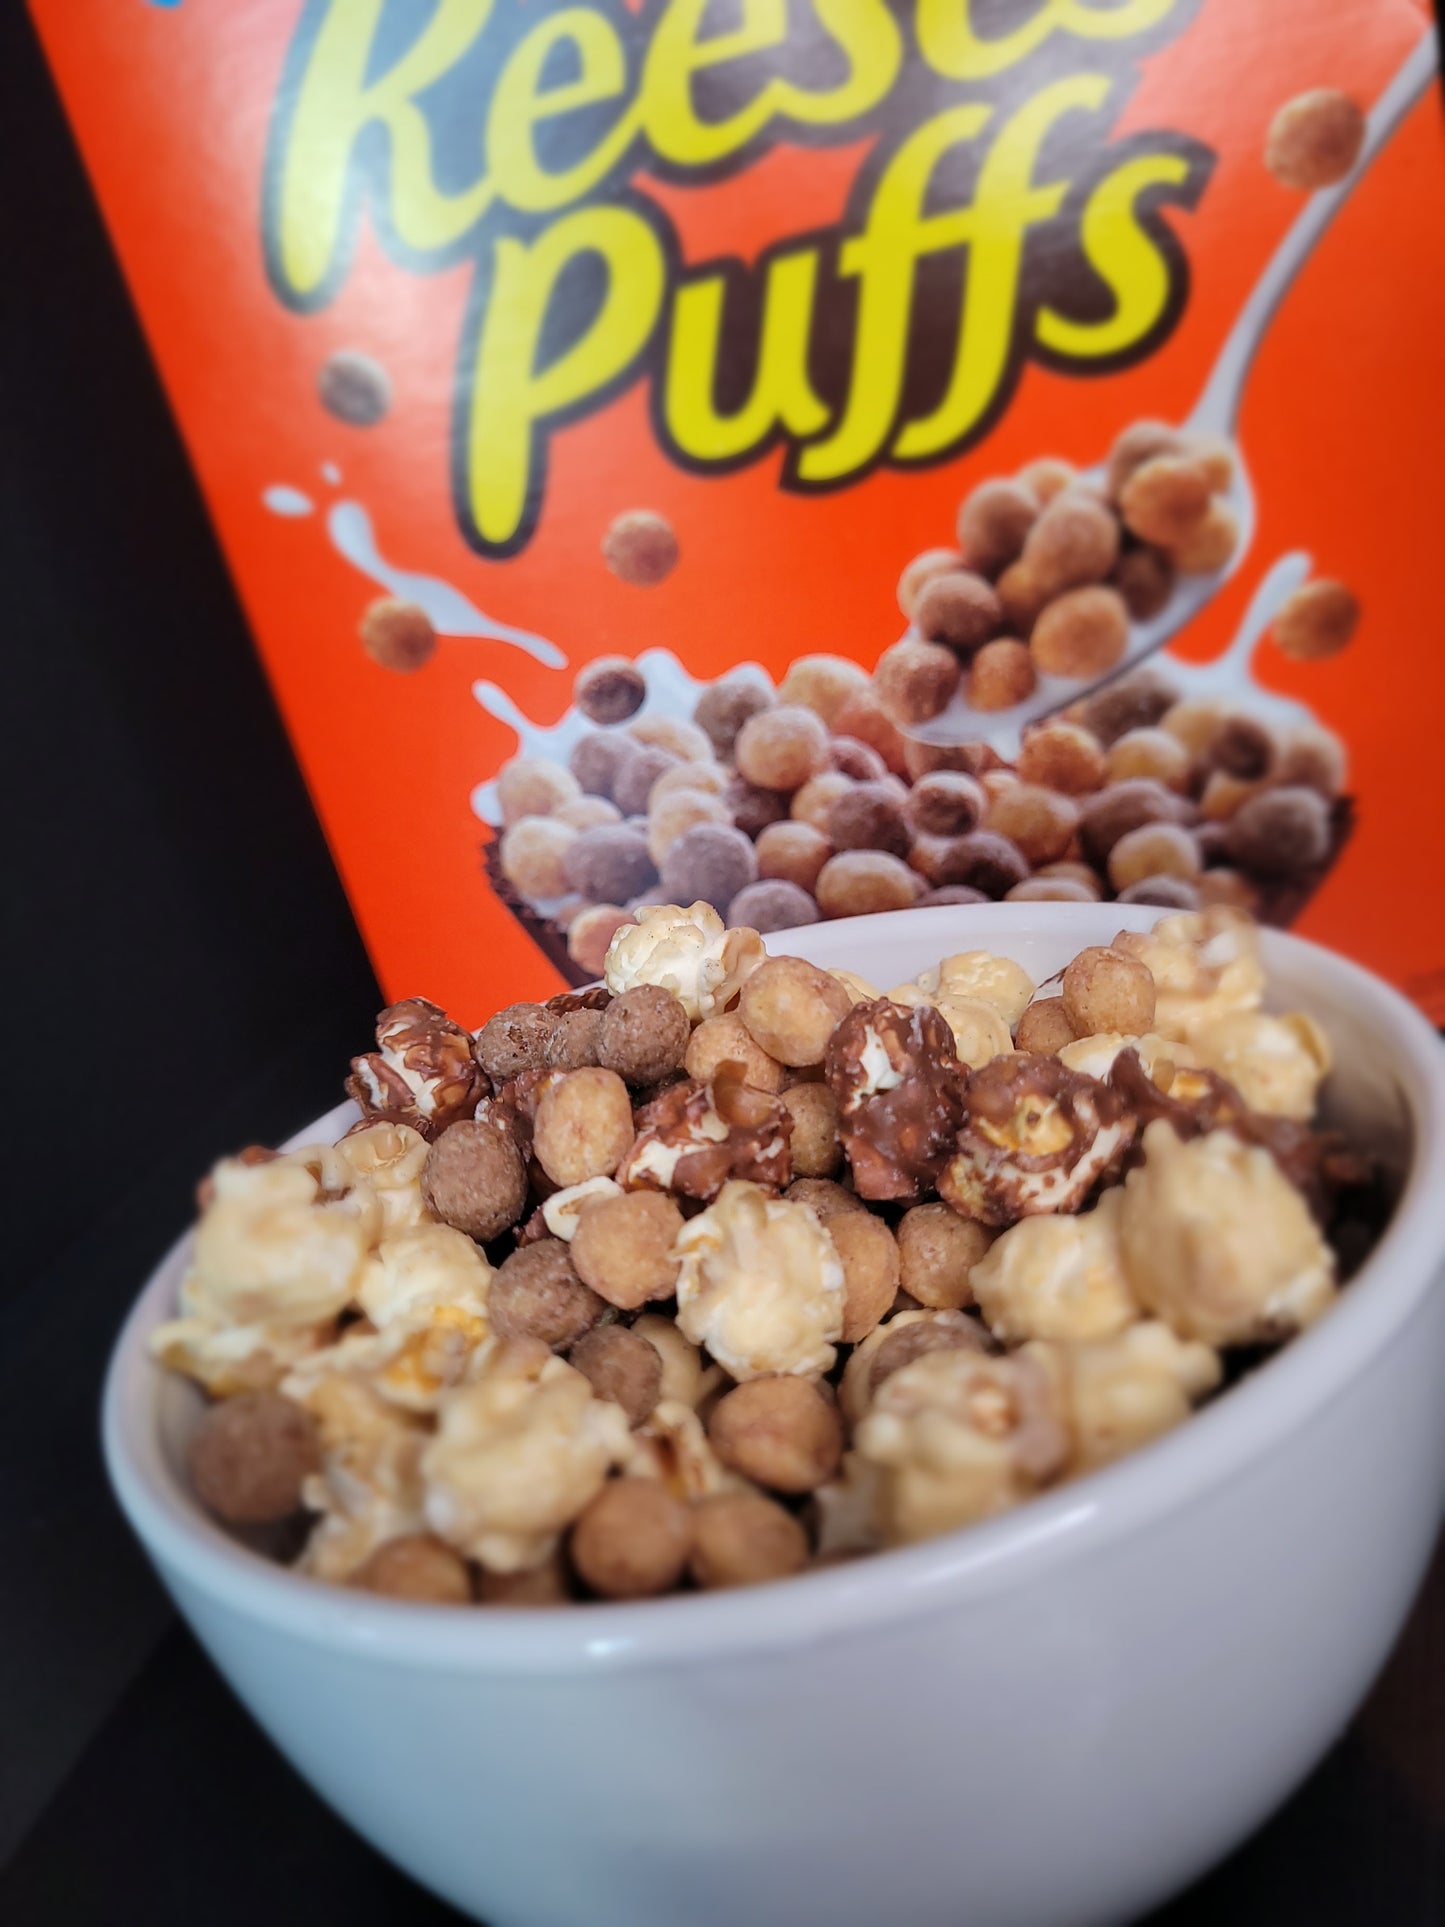 Popcorn 4 Breakfast : Reese's Puffs